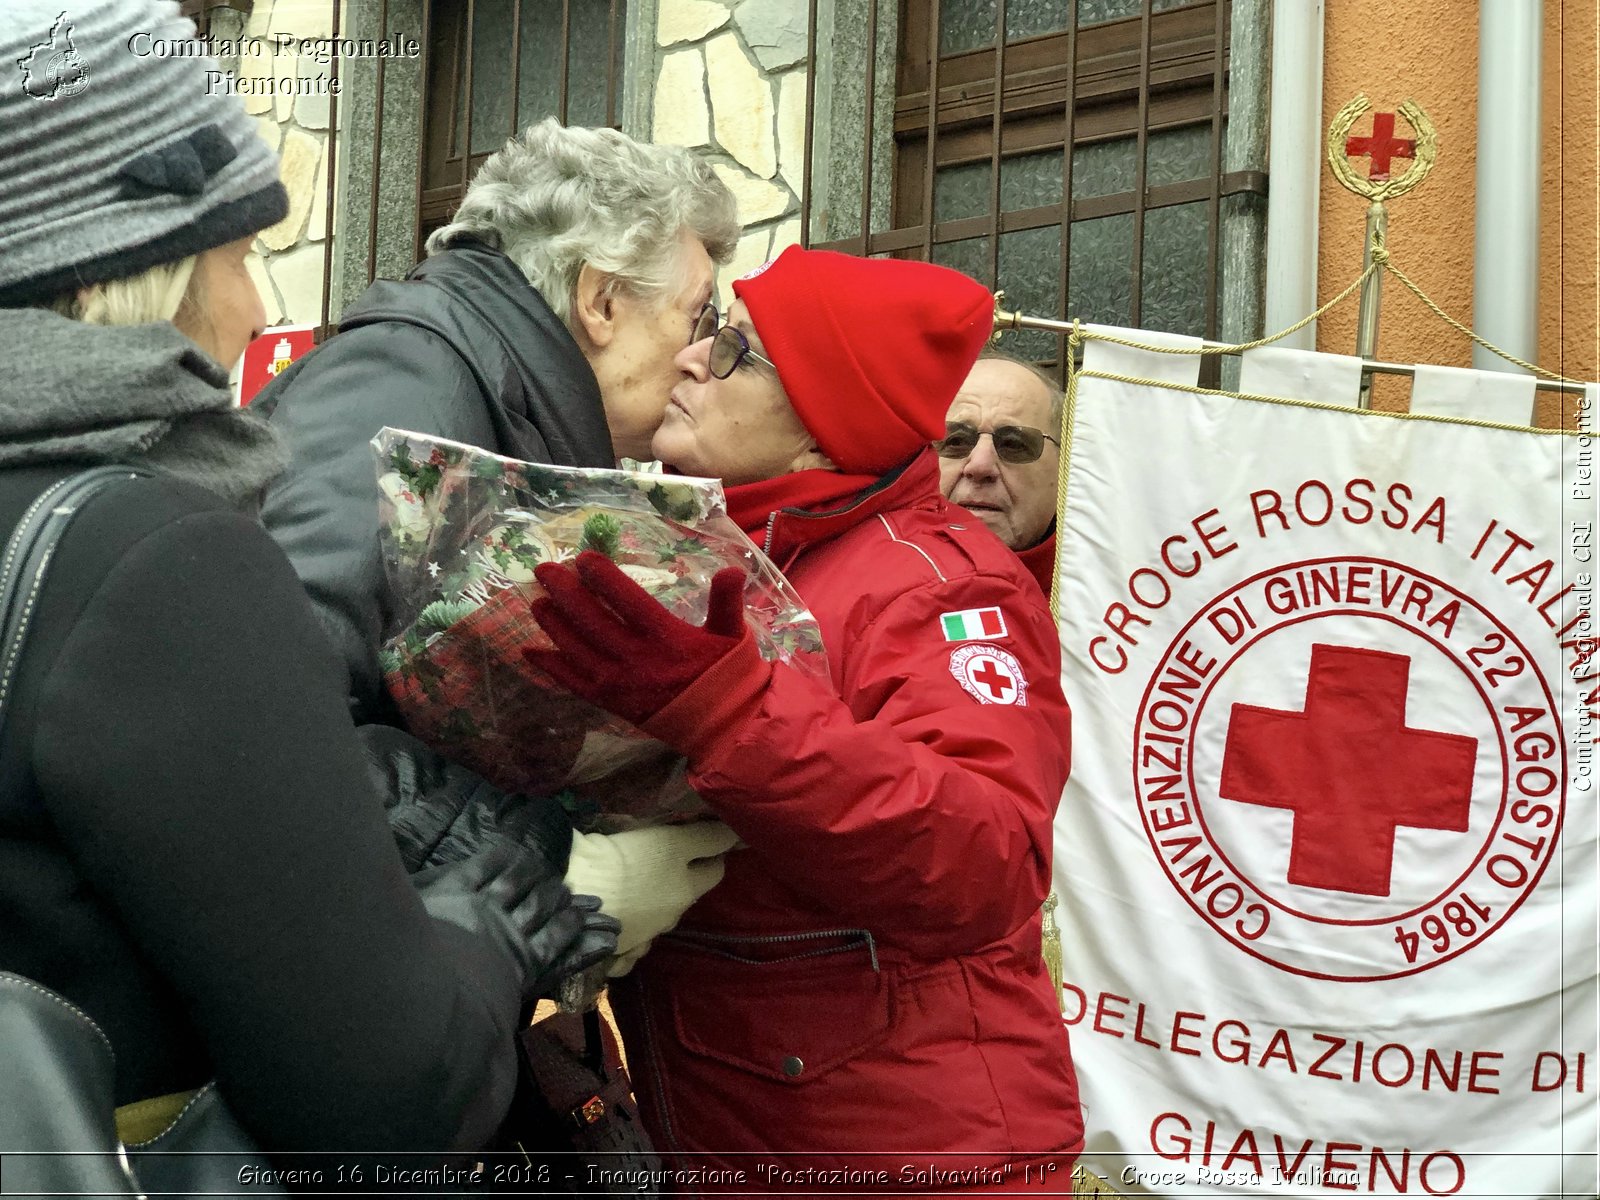 Giaveno 16 Dicembre 2018 - Inaugurazione "Postazione Salvavita" N 4 - Croce Rossa Italiana- Comitato Regionale del Piemonte